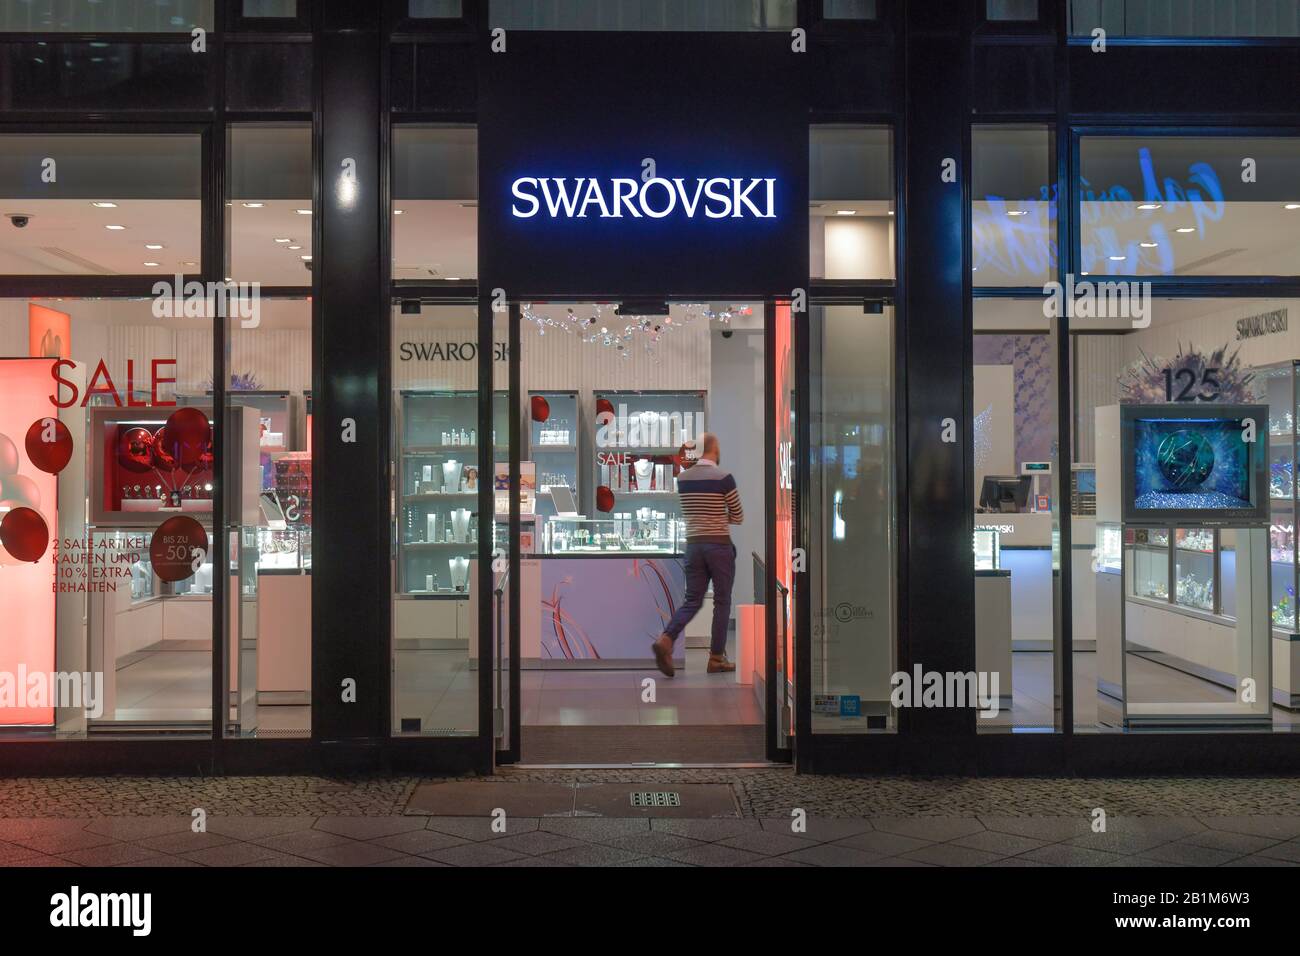 Swarovski, Friedrichstraße, Mitte, Berlin, Deutschland Stock Photo - Alamy